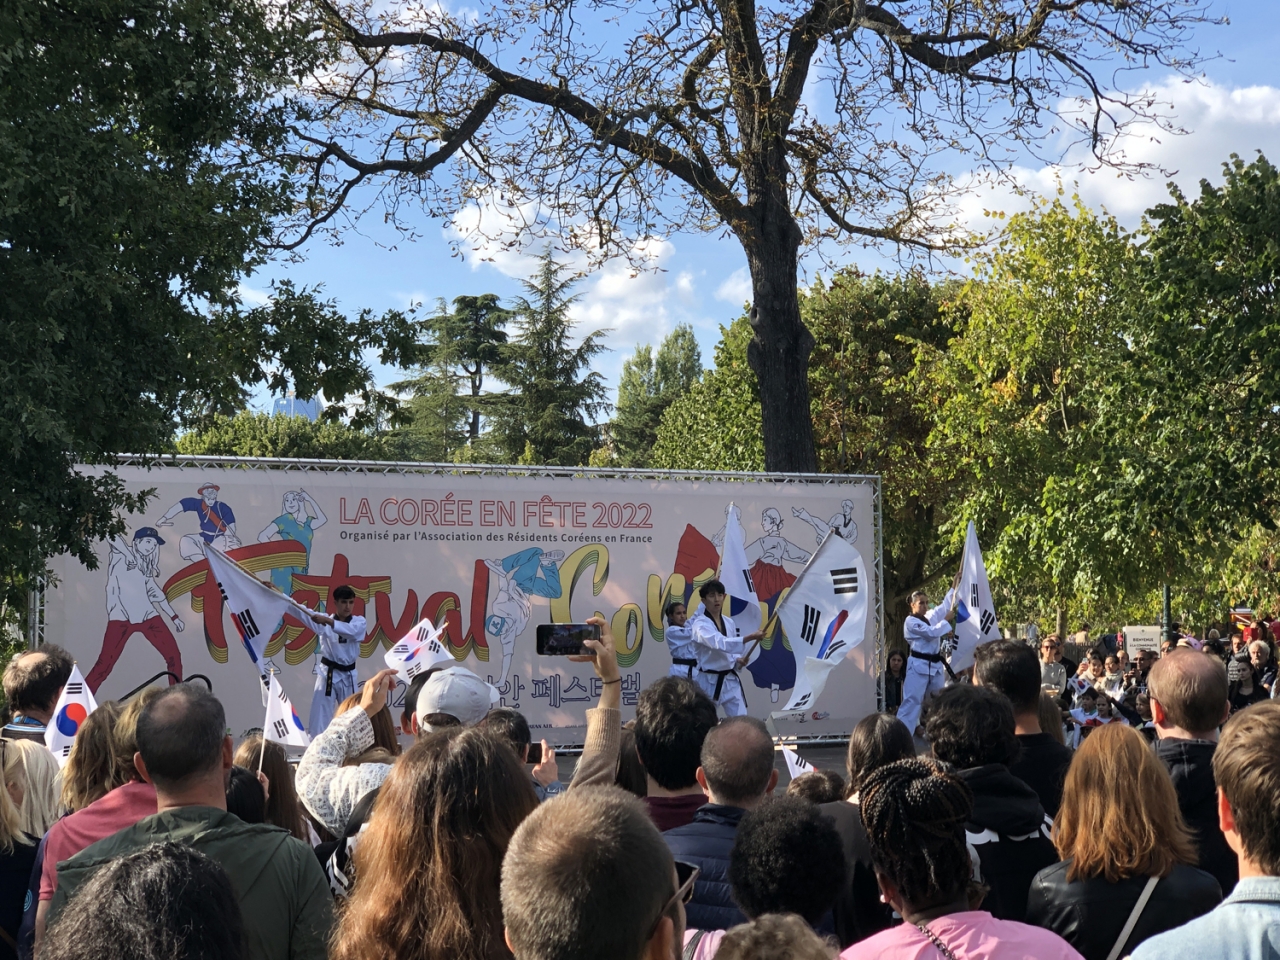 프랑스한인회가 주최한 ‘2022 코리안 페스티벌’이 지난 9월 17일과 18일 파리의 놀이동산 Jardin d'Acclimatation 안에 있는 서울공원에서 열렸다.[사진제공=프랑스한인회]